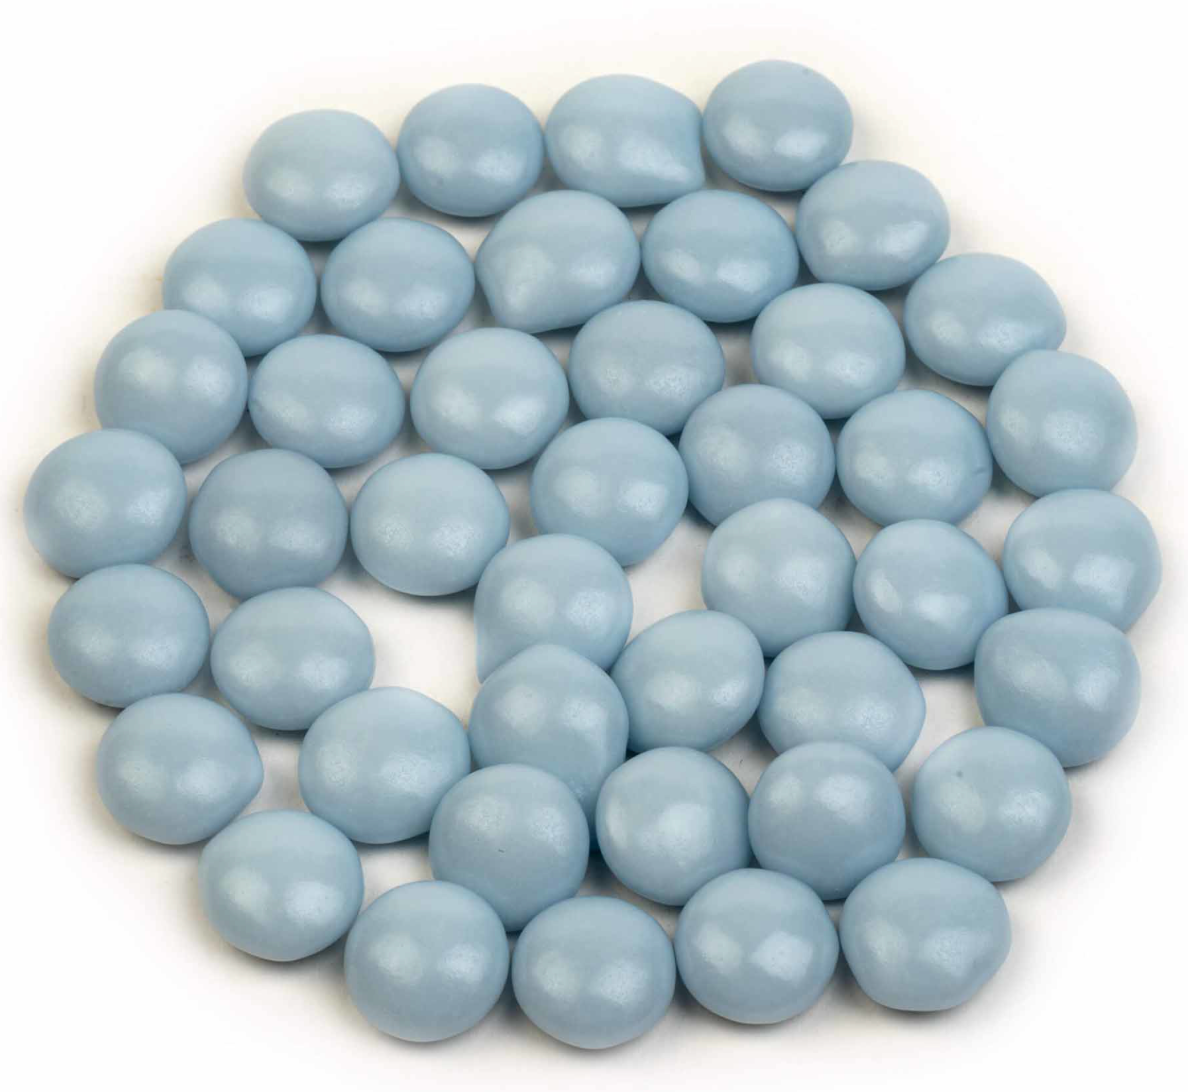 Mini confetti's (babyblauw glanzend)